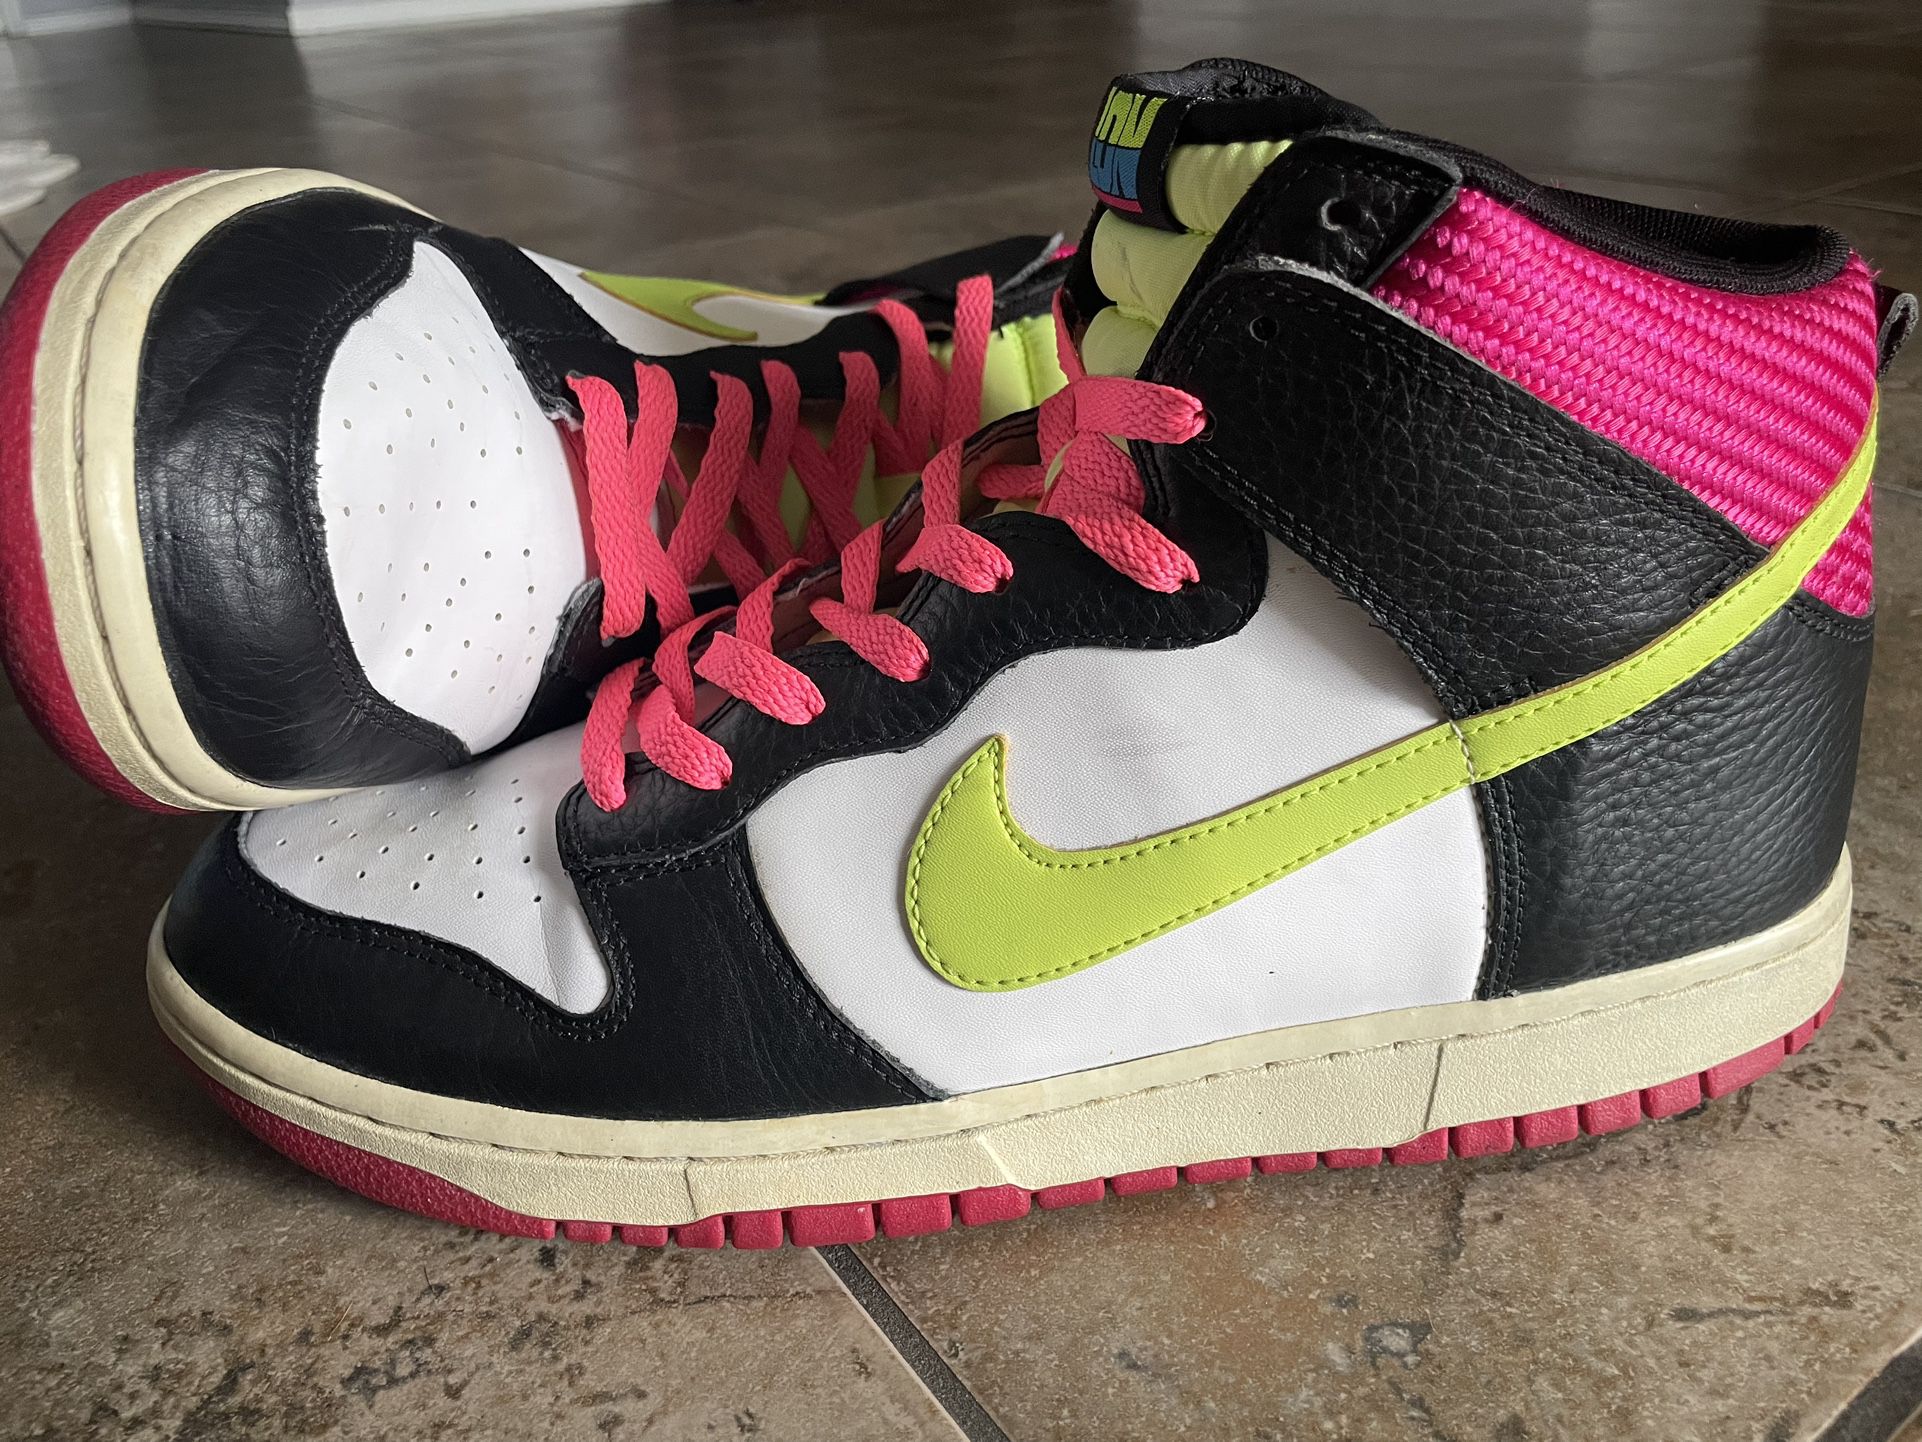 Nike Dunk High London White Volt Fireberry Men’s Shoe Size 12